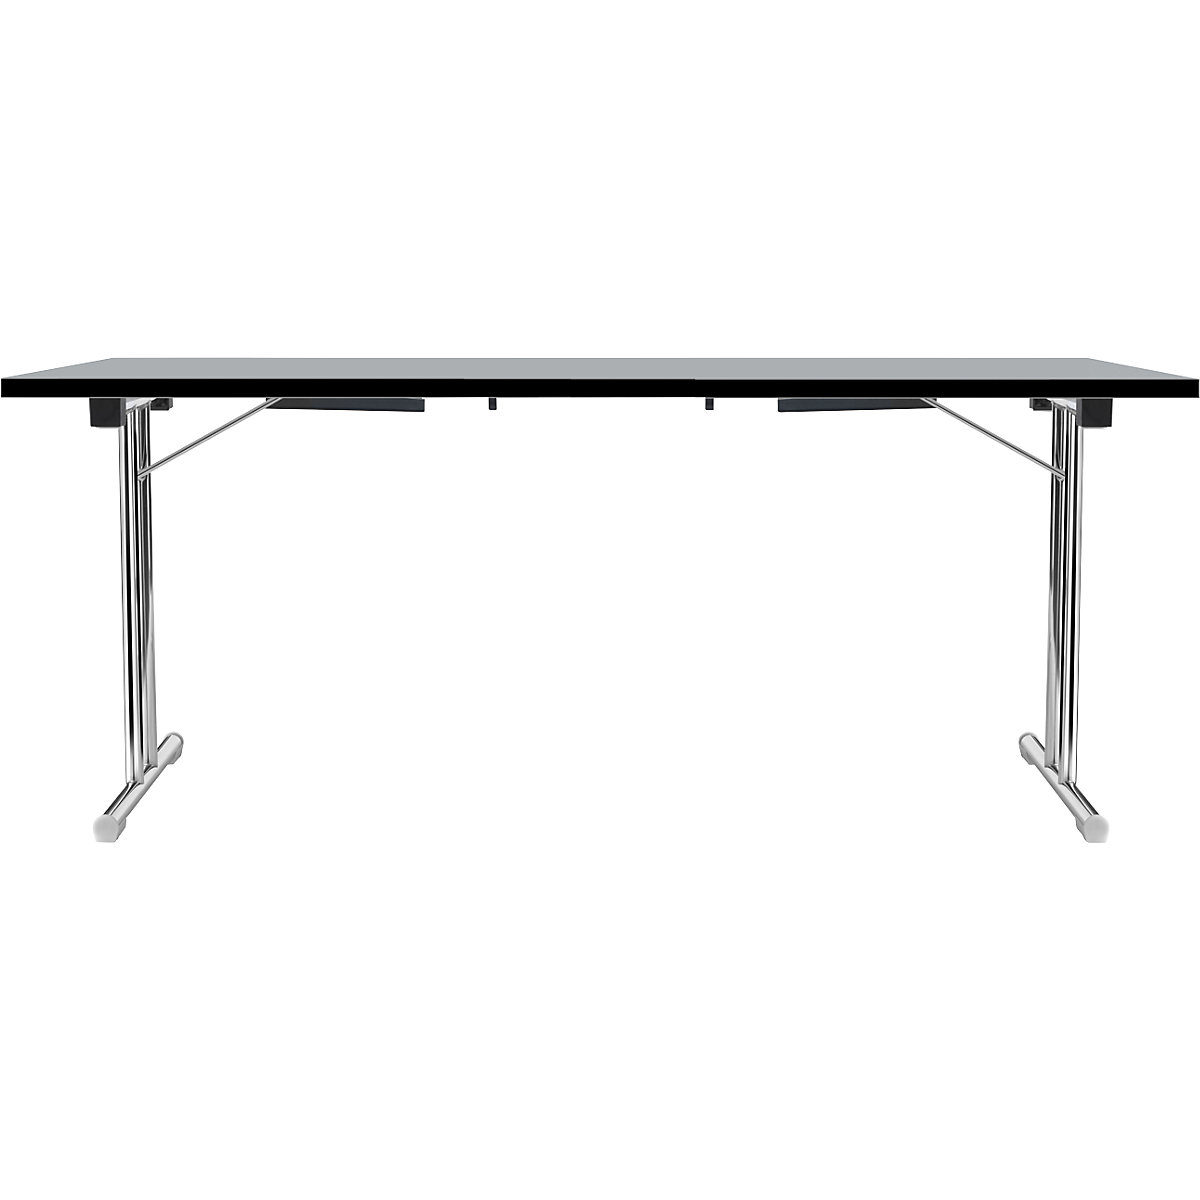 Inklapbare tafel met dubbel T-vormig onderstel, frame van staalbuis, verchroomd, lichtgrijs/zwart, b x d = 1800 x 800 mm-5